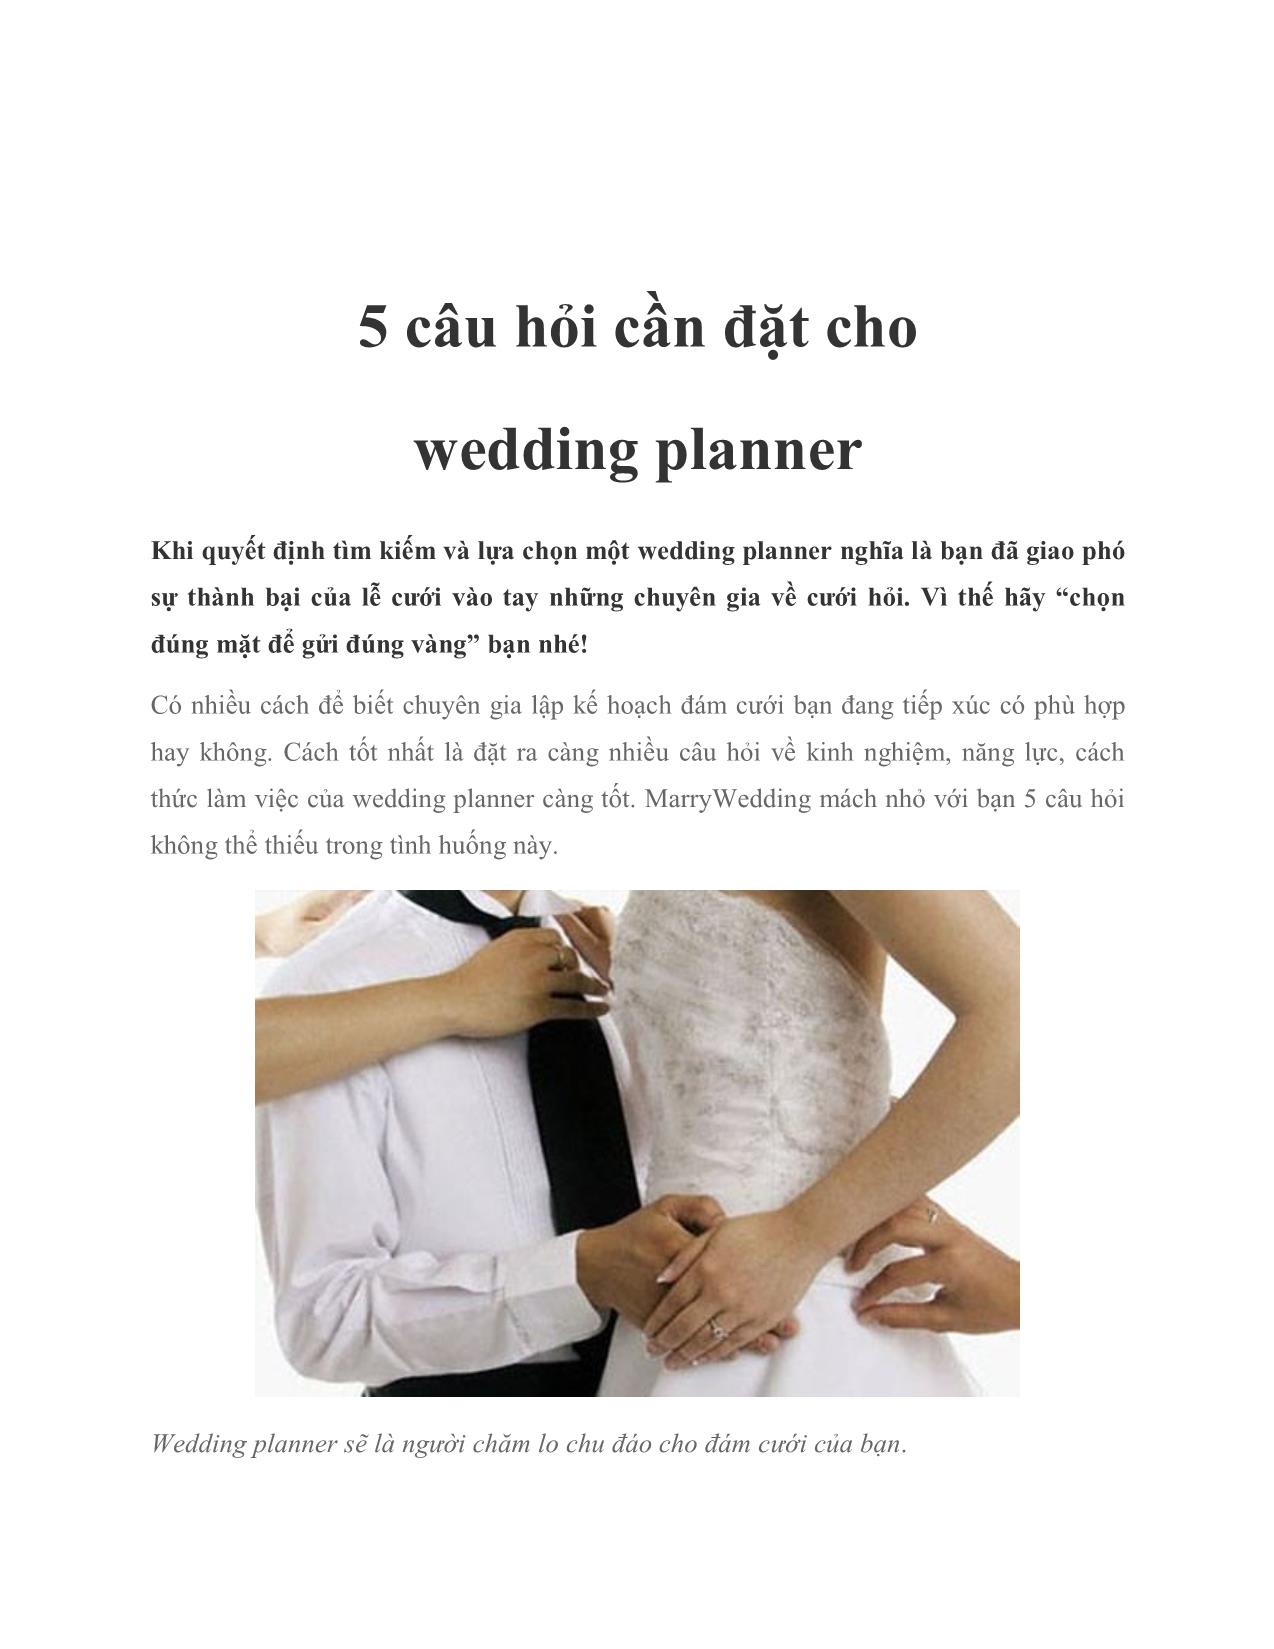 5 câu hỏi cần đặt cho wedding planner trang 1